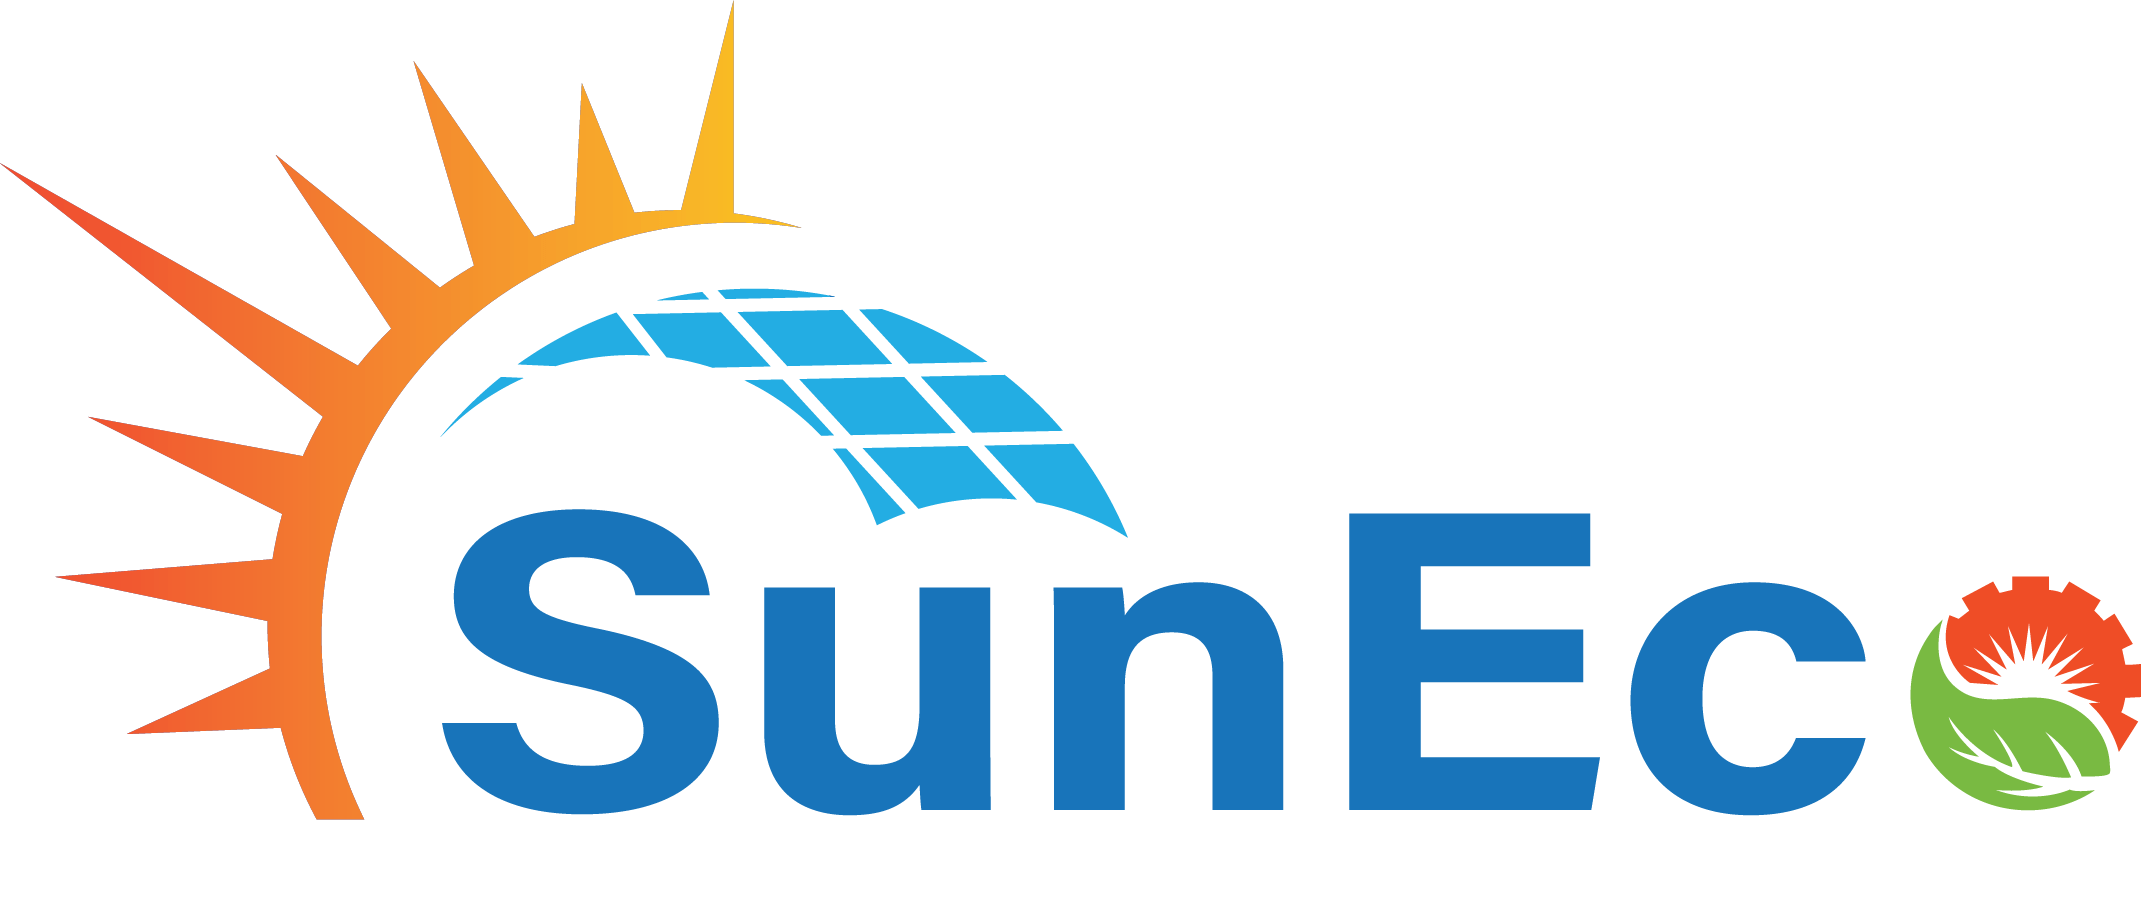 Suneco chuyên đèn pha Led năng lượng mặt trời, đèn street light năng lượng mặt trời